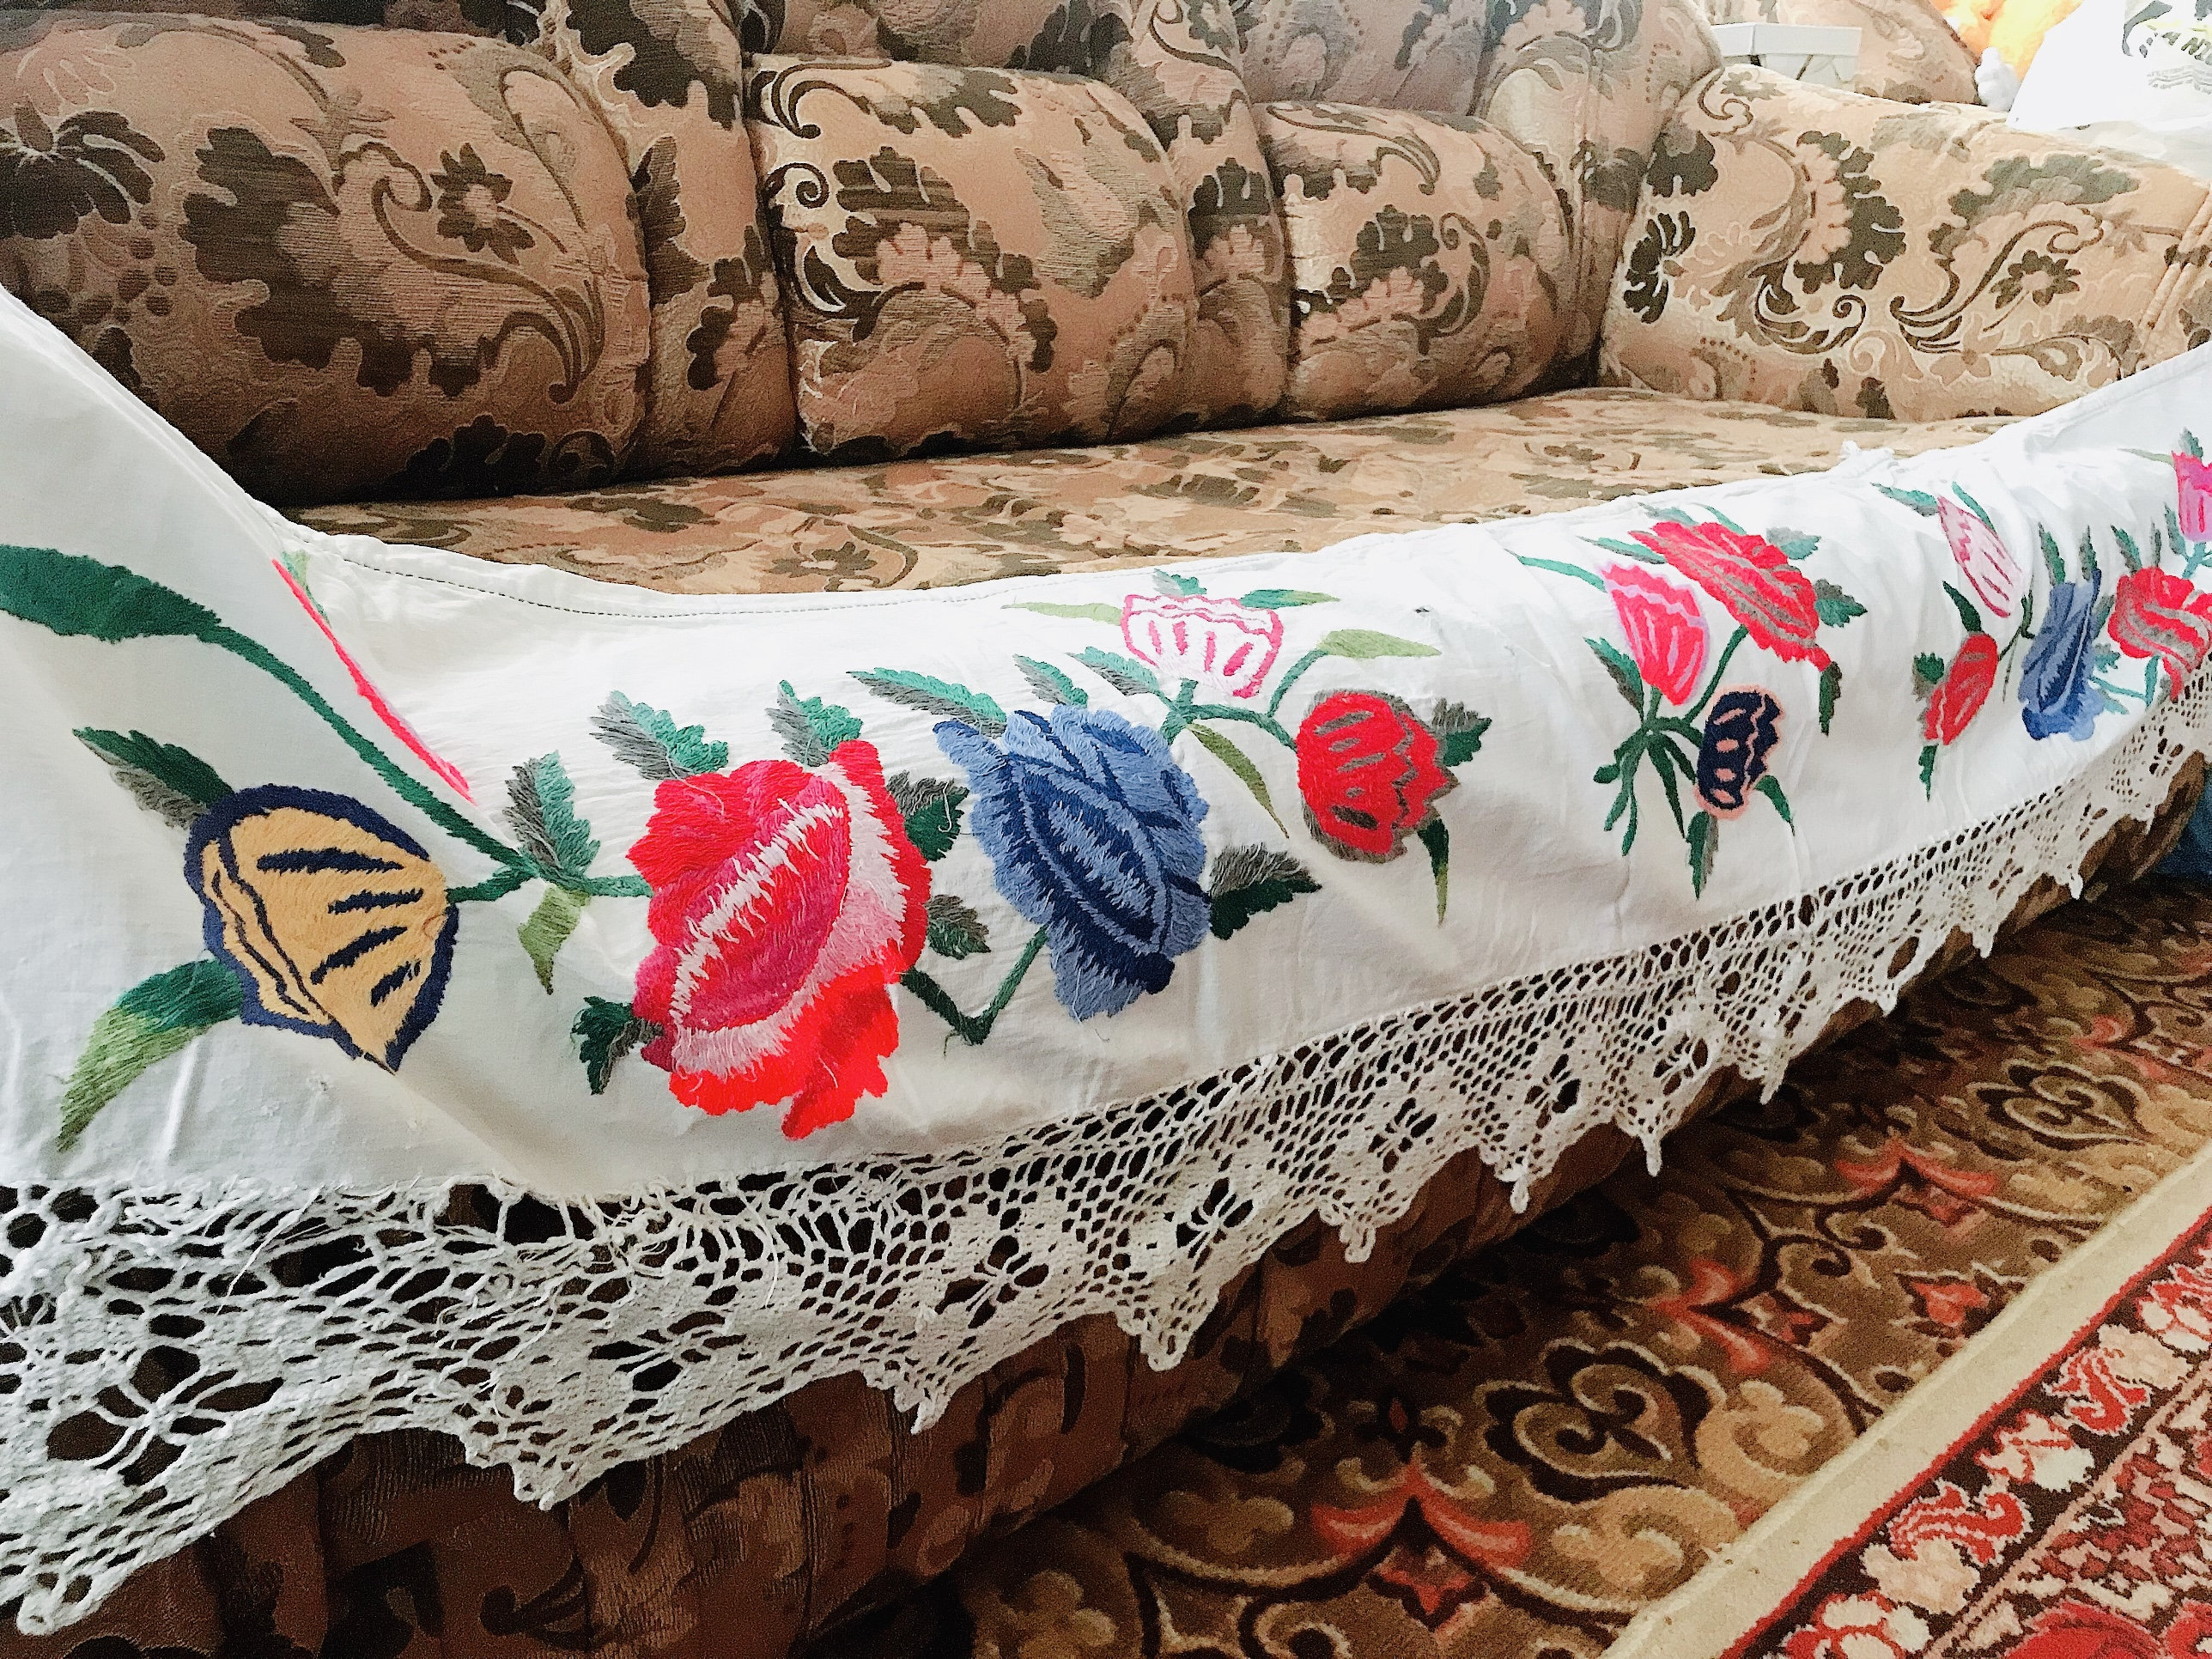 drap de lit ukrainien brodé à la main valance antique vintage roumain homespun tissu traditionnel folk mariage coton ancien linge lit